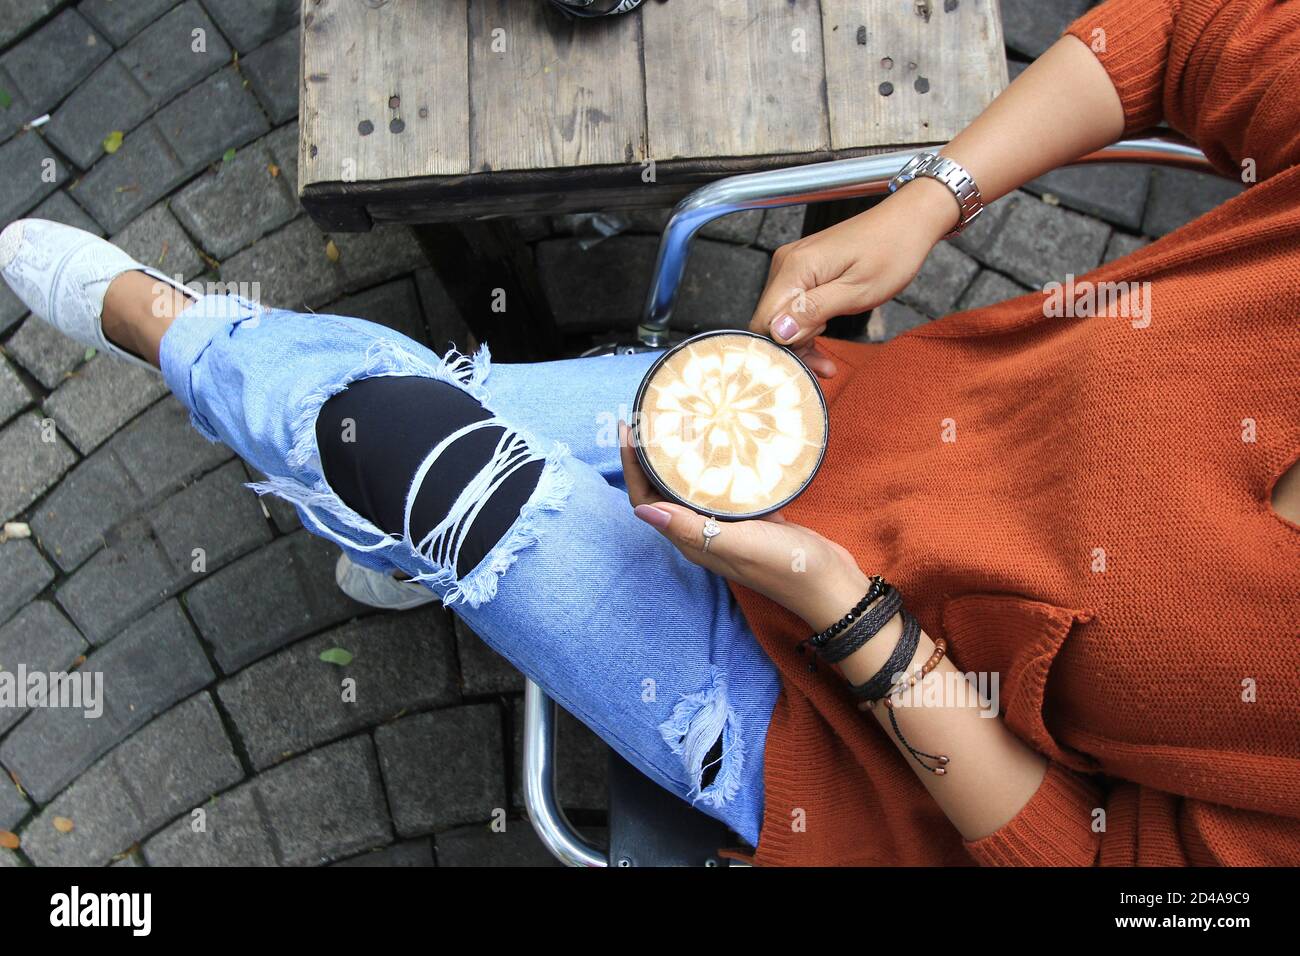 Eine Frauenhand hält Latte Art Kaffee auf einem Holztisch. Jemand genießt Kaffeepausen während des Tages Stockfoto